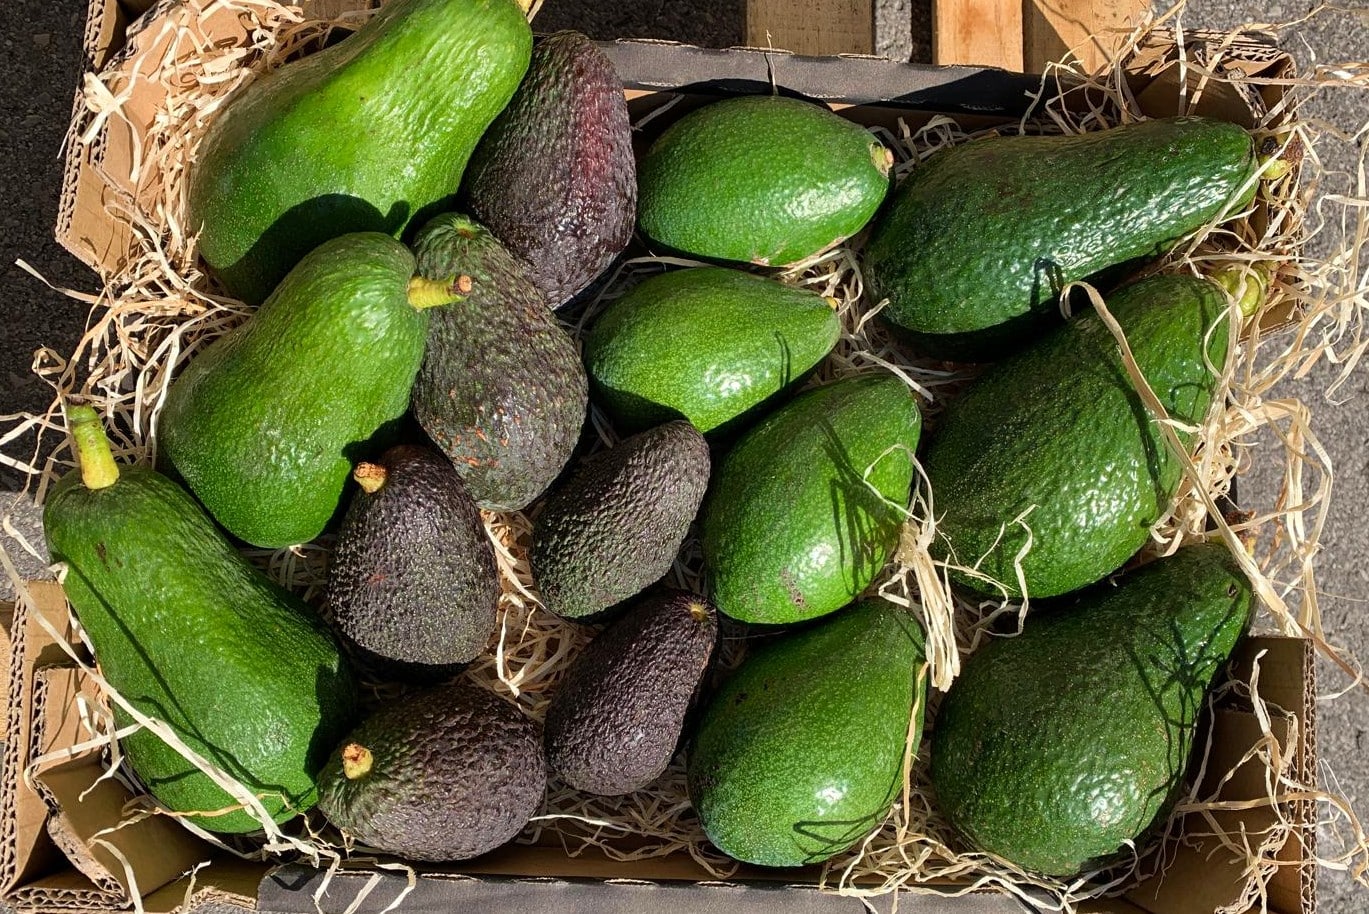 mixed avocadobox wild